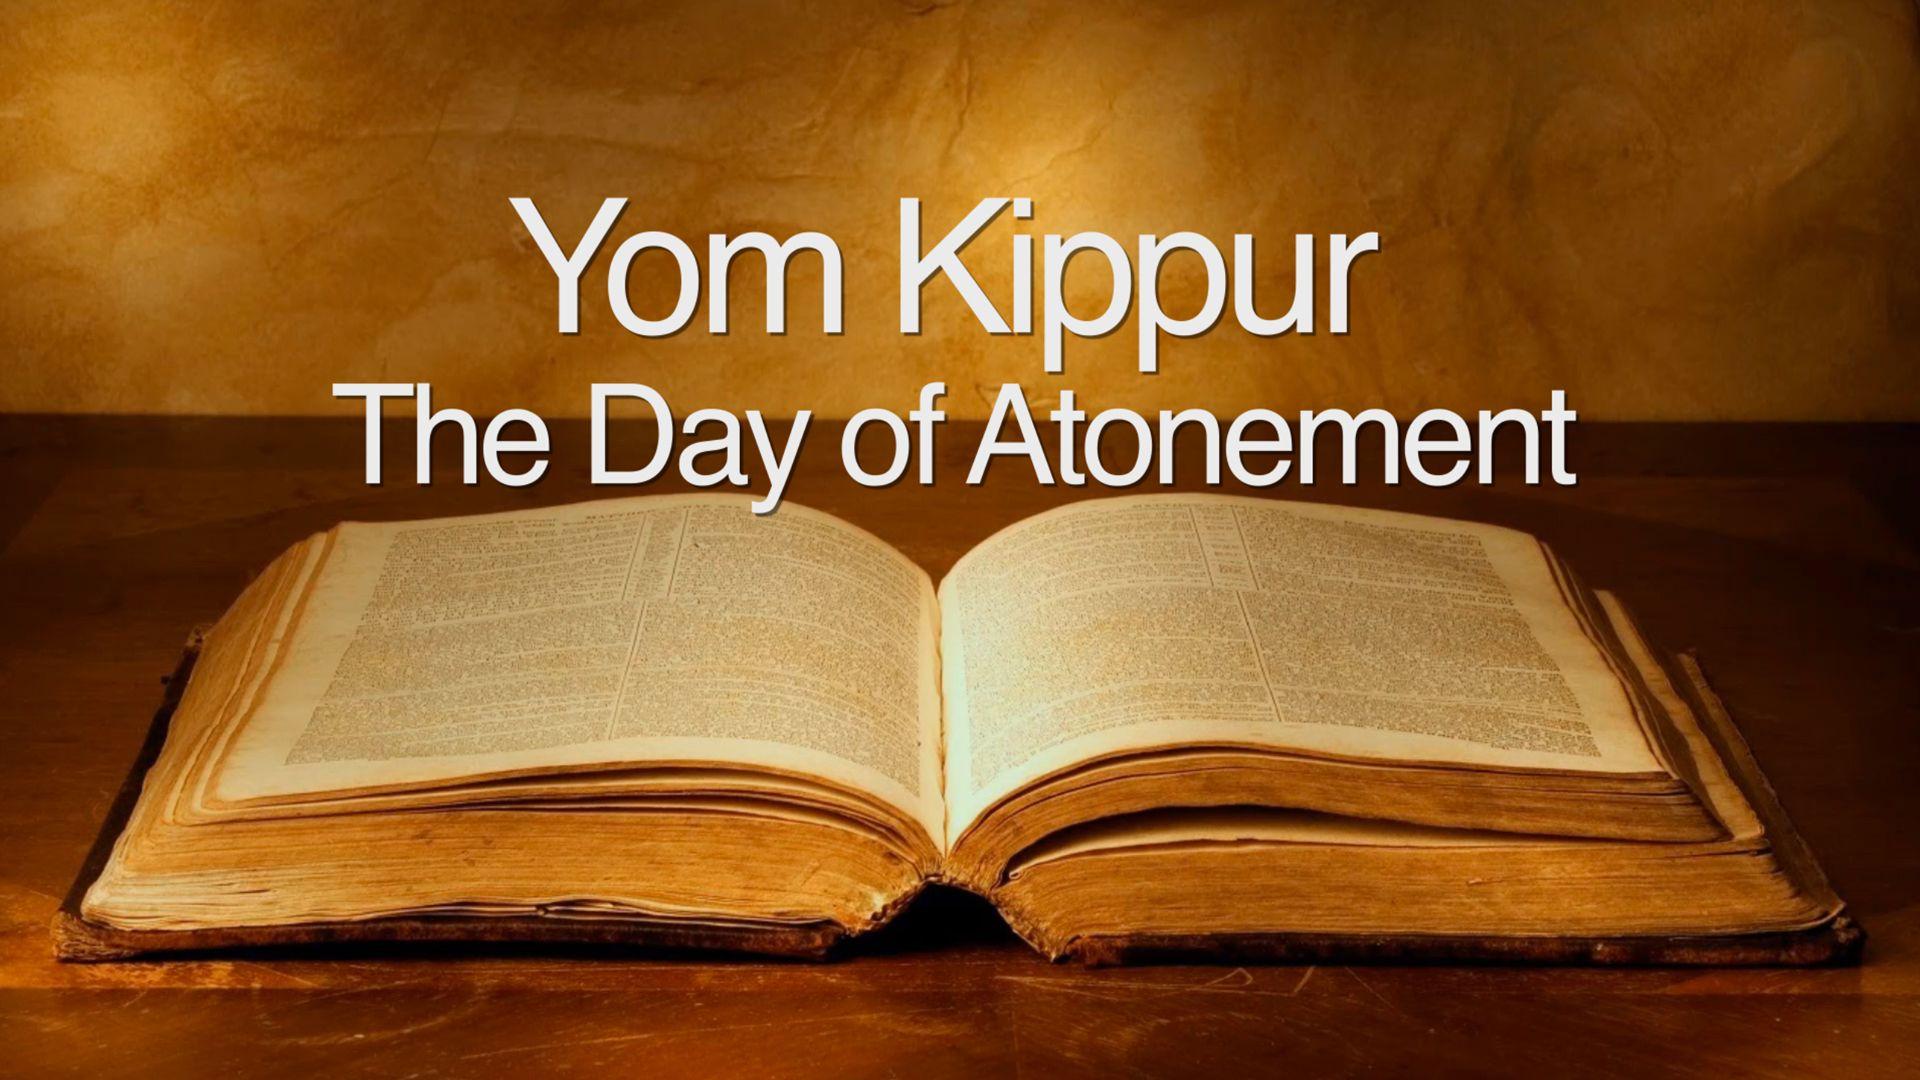 Images: Yom Kippur